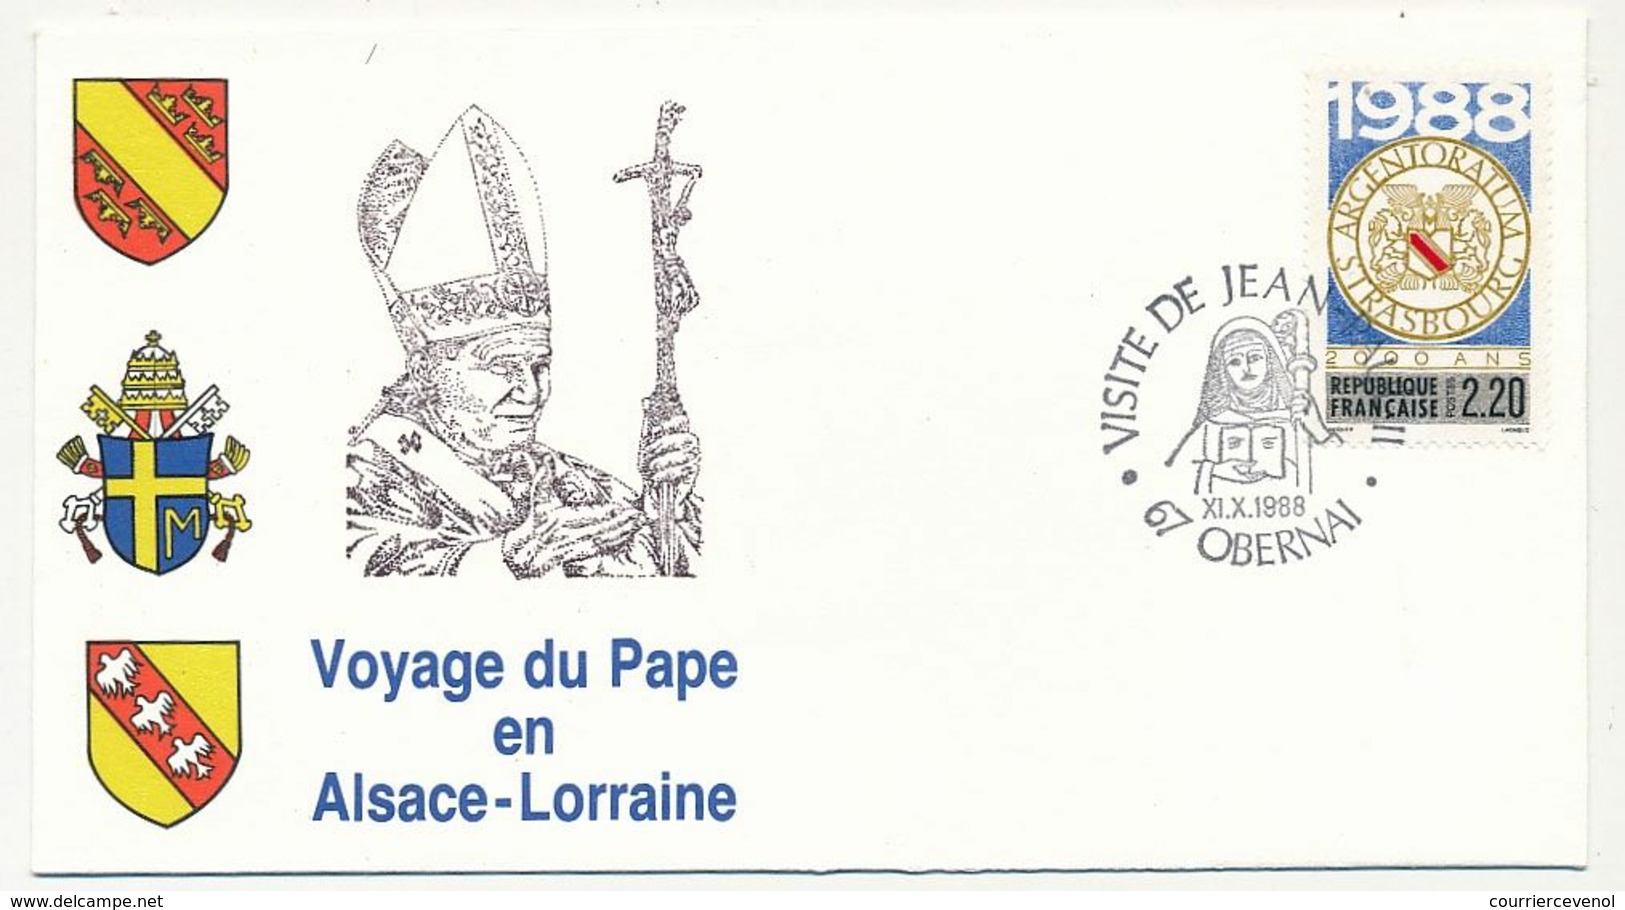 FRANCE - 7 enveloppes Voyage du Pape en Alsace Lorraine 1988 + VATICAN - 1 env idem